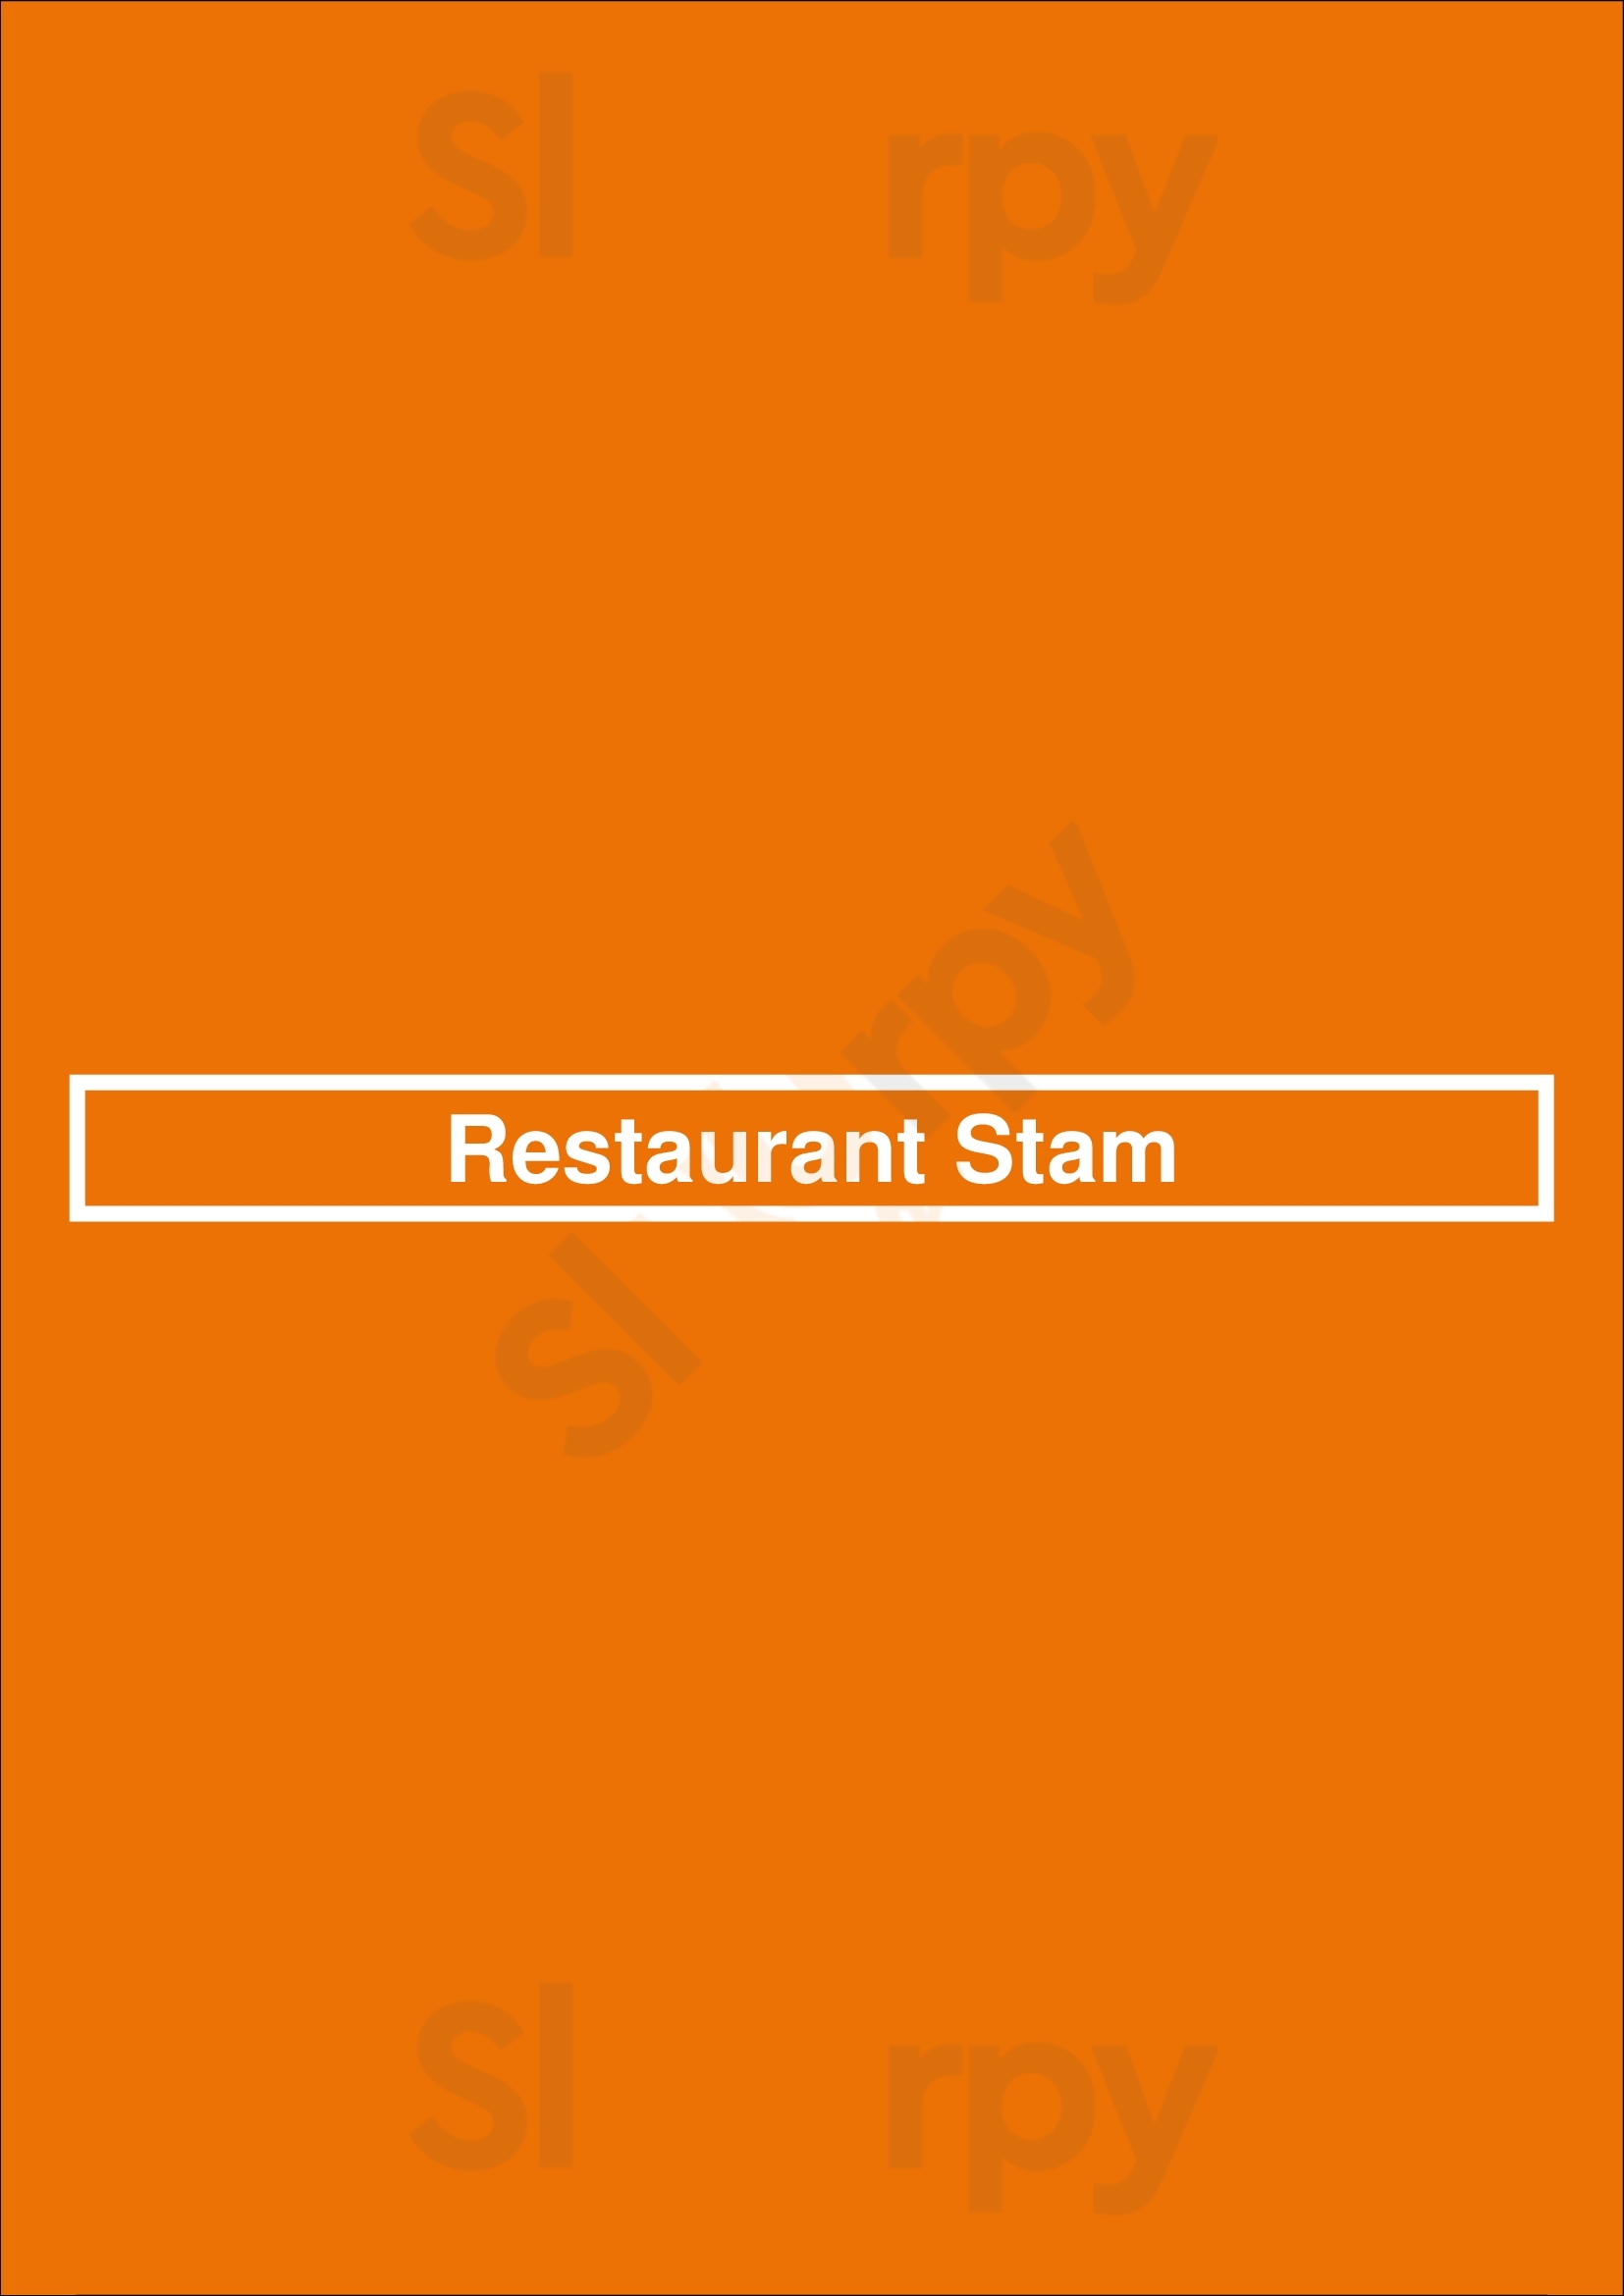 Restaurant Stam Ede Menu - 1